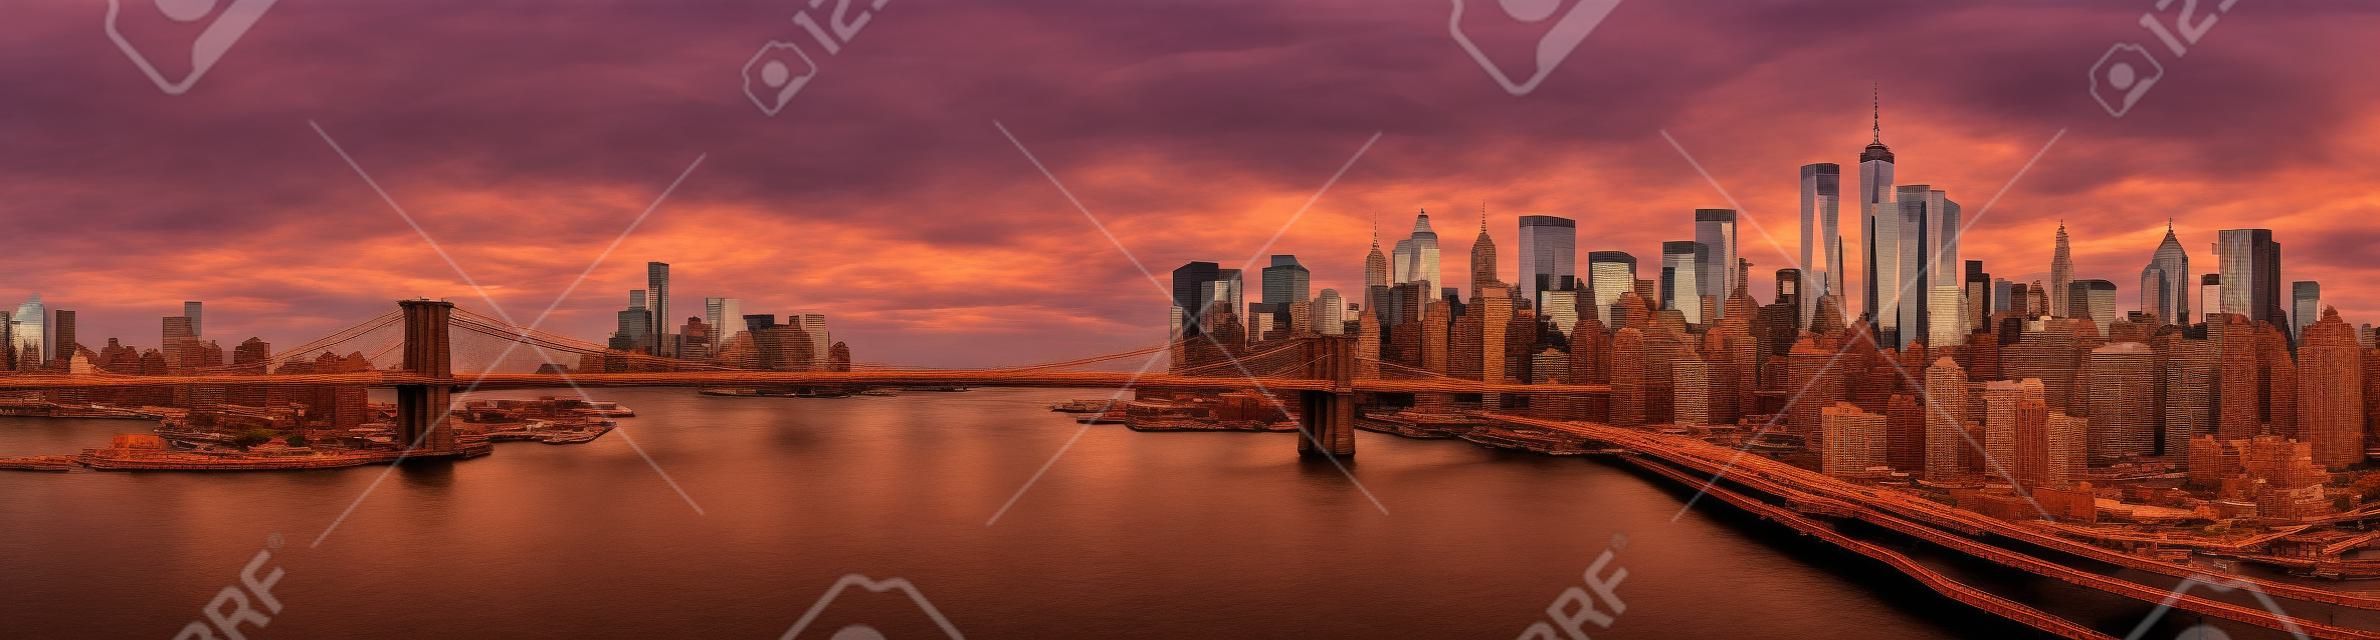 브루클린 다리 일몰 파노라마. 상징적 인 랜드 마크는 브루클린과 프리덤 타워에 의해 지배 뉴욕 금융 지구 스카이 라인 사이에 걸쳐있다.